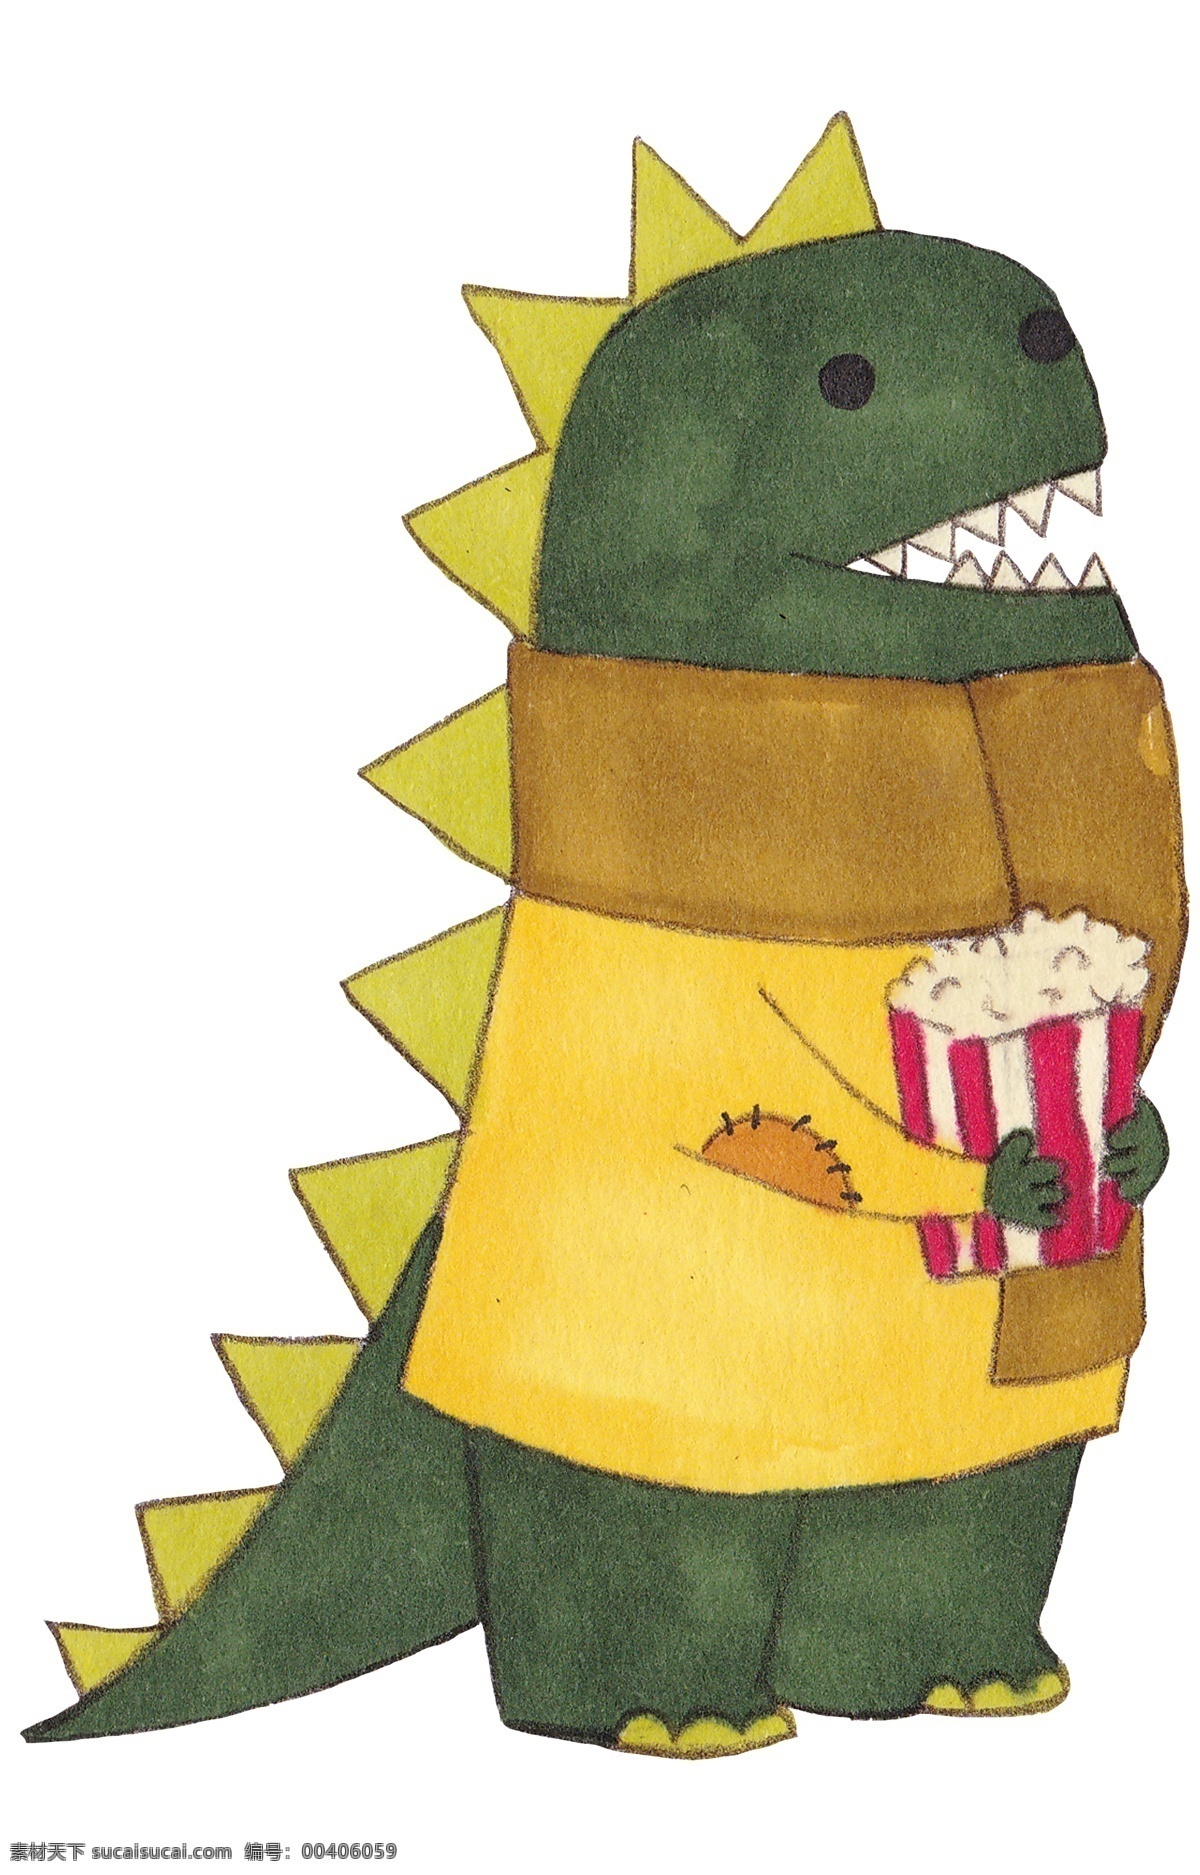 水彩 手绘 创意 小 恐龙 插画 绿色小恐龙 爆米花 吃爆米花 拟人小恐龙 夸张风格 水彩恐龙 手绘恐龙插画